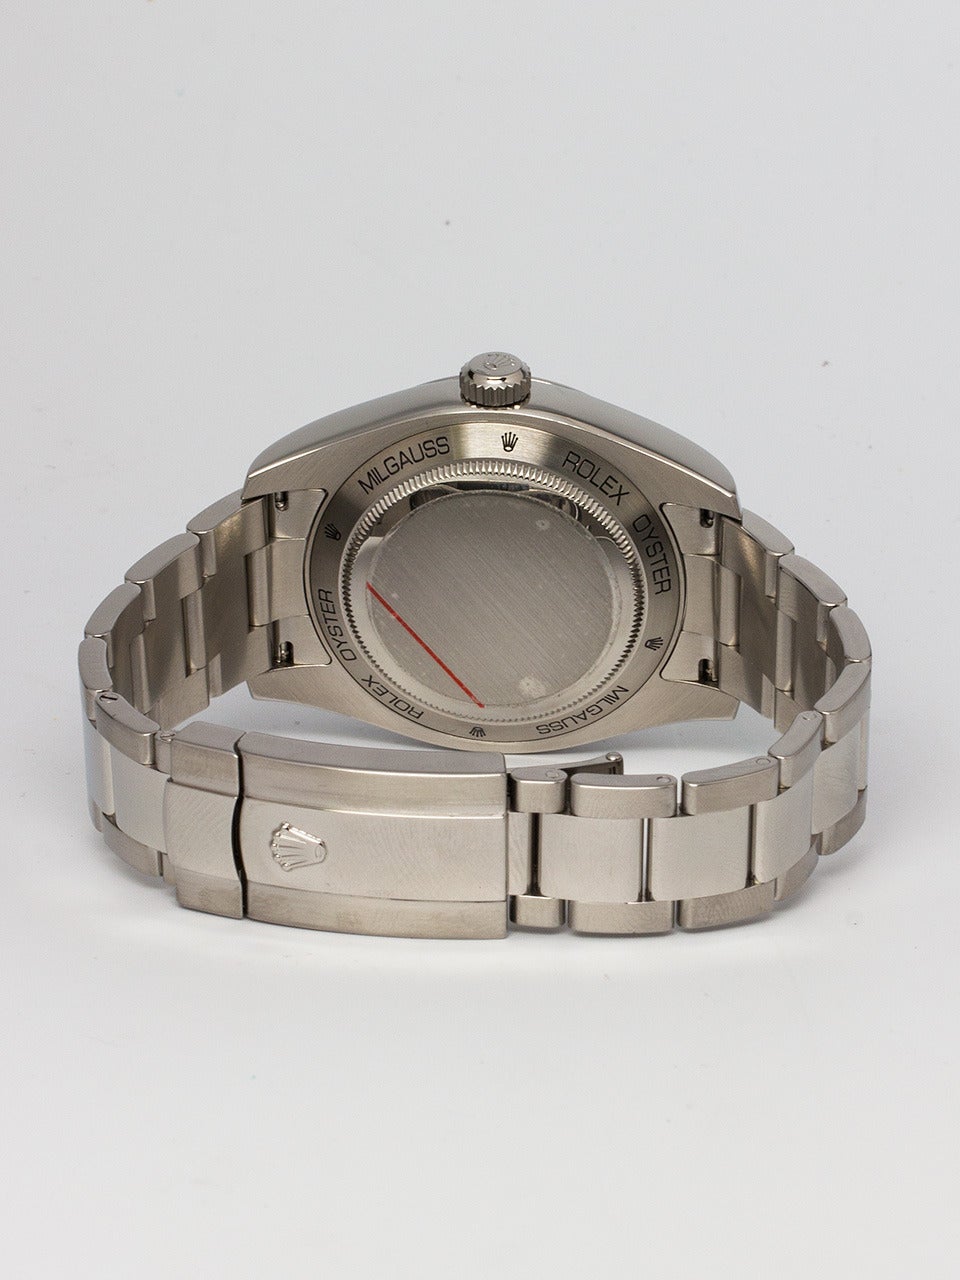 Men's Rolex Stainless Steel Milgauss Chronometer Wristwatch Ref 116400